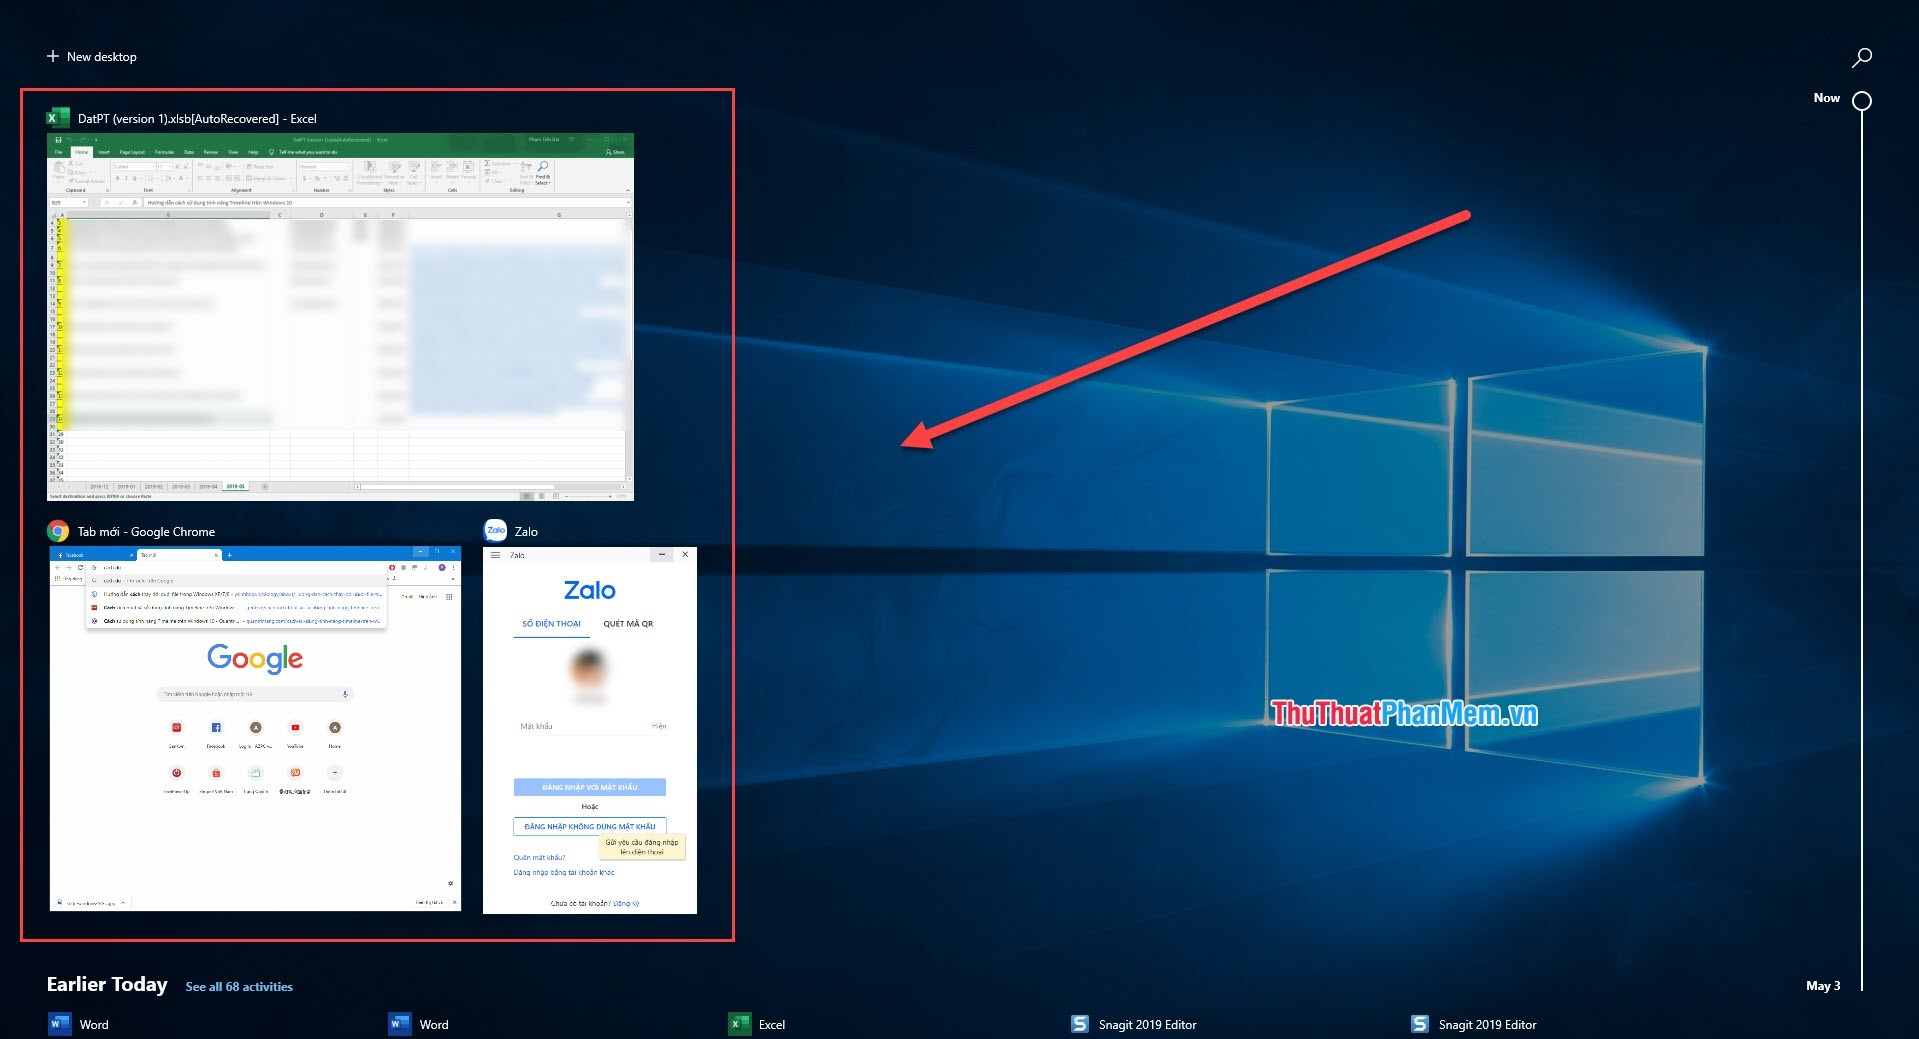 Hướng dẫn cách sử dụng tính năng Timeline trên Windows 10